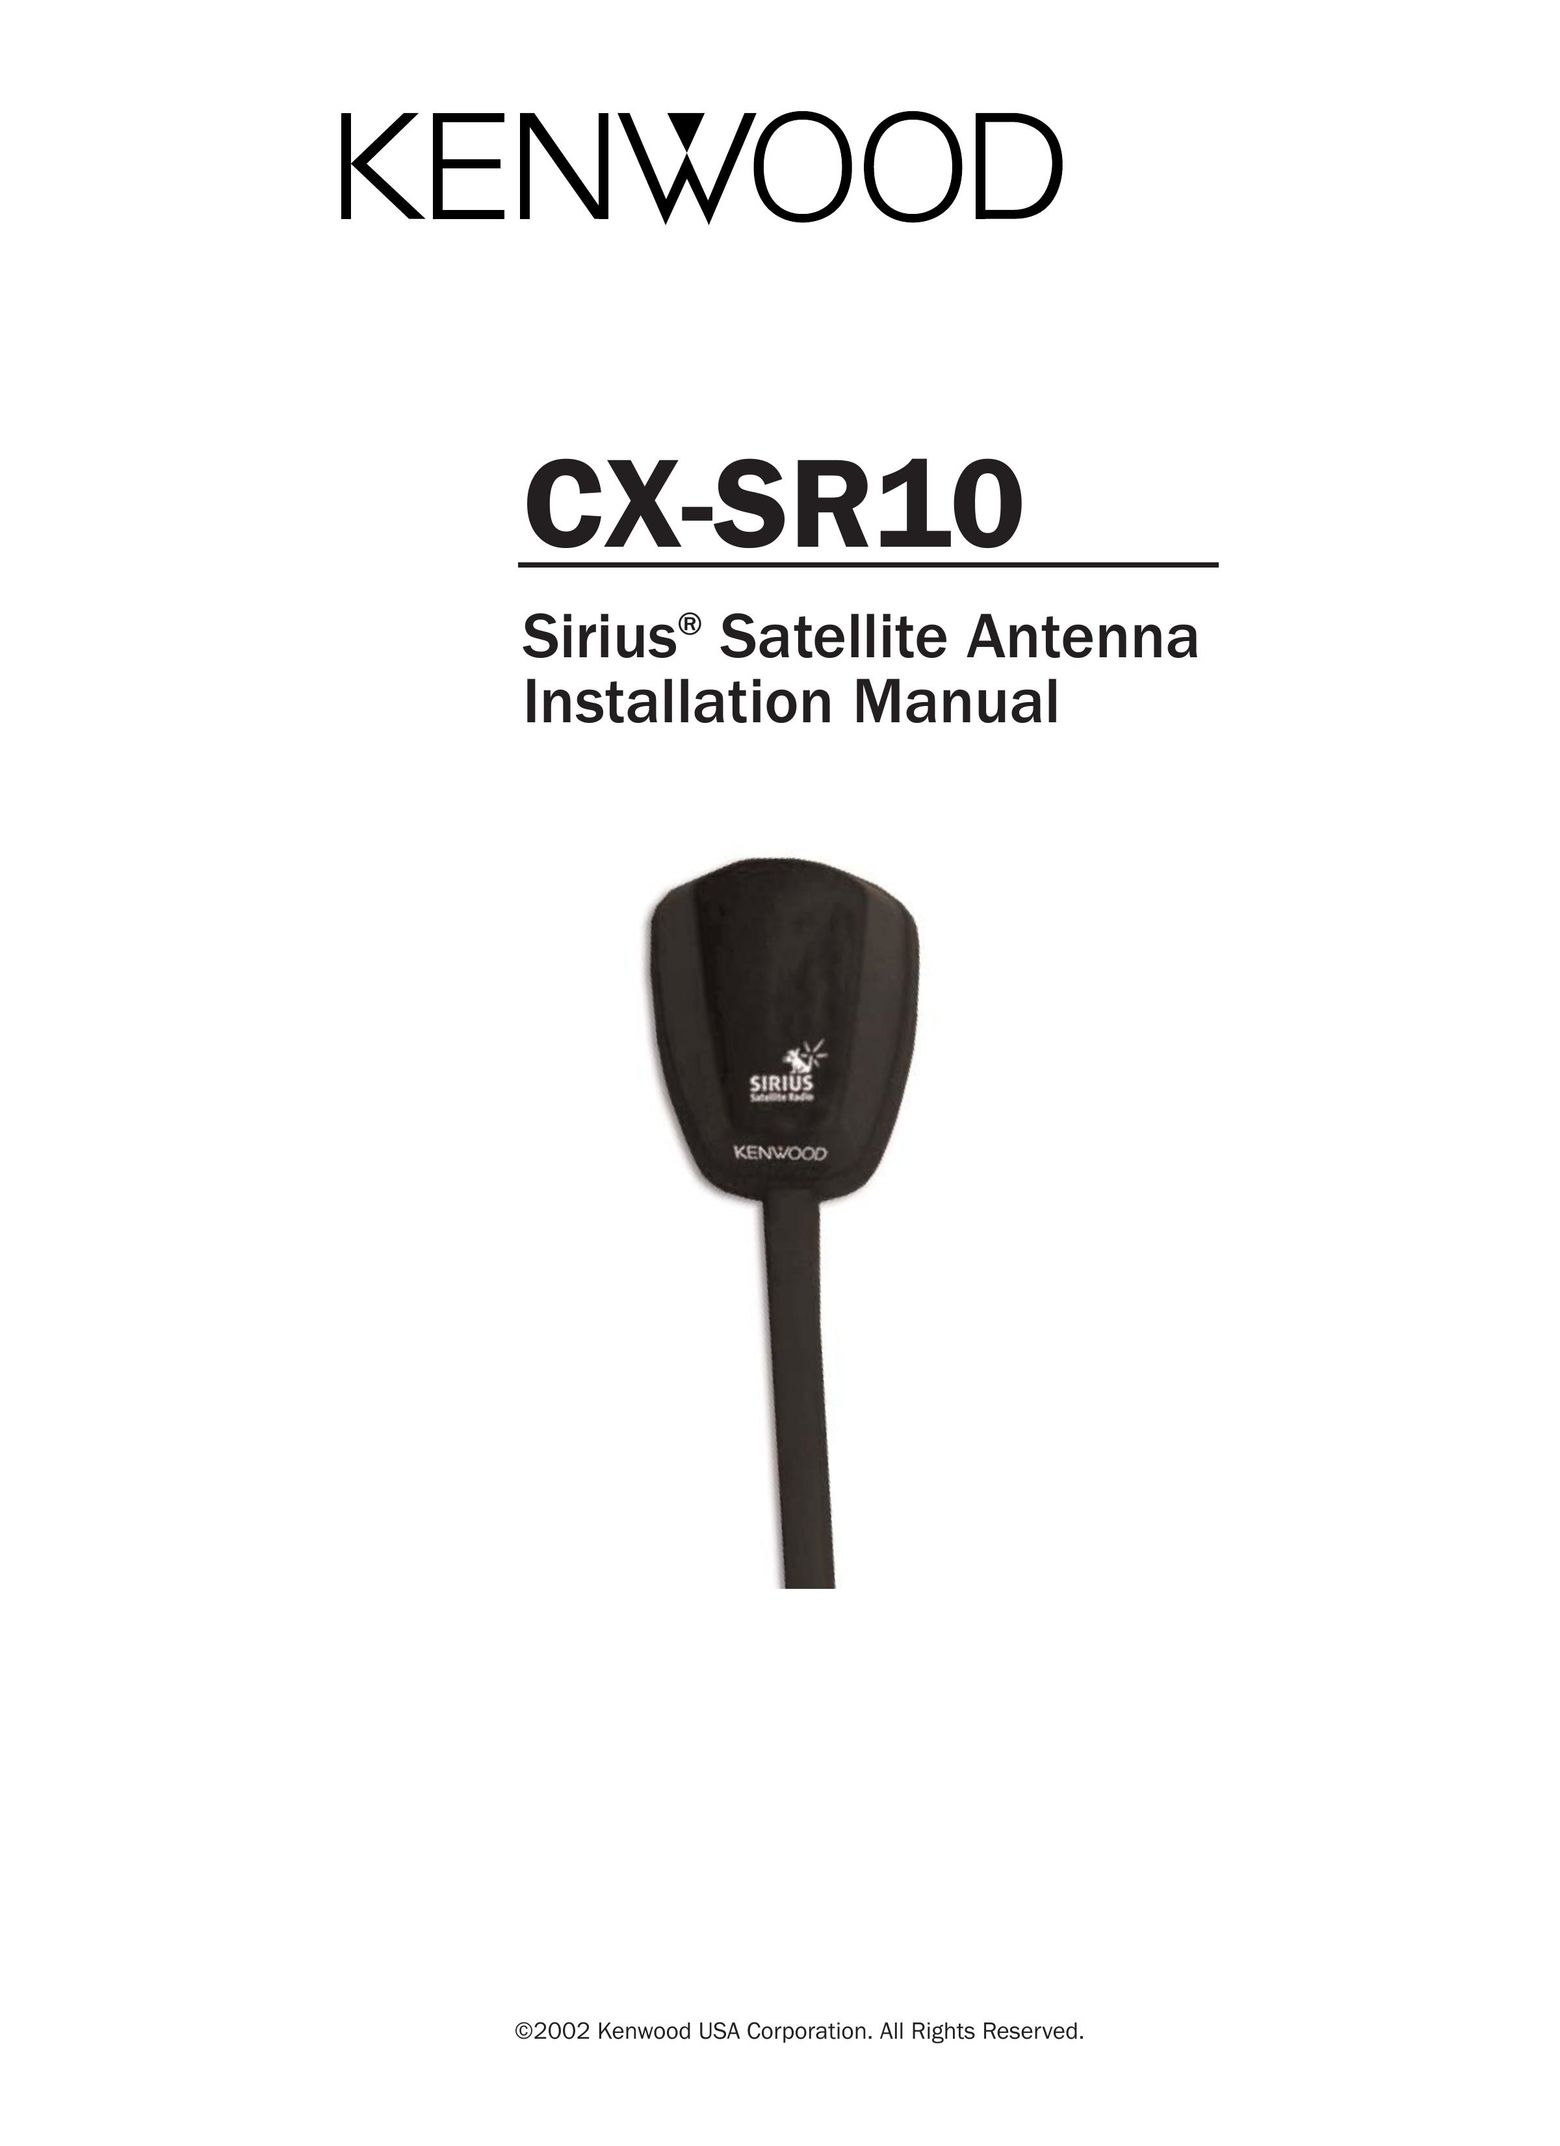 Kenwood CX-SR10 TV Antenna User Manual